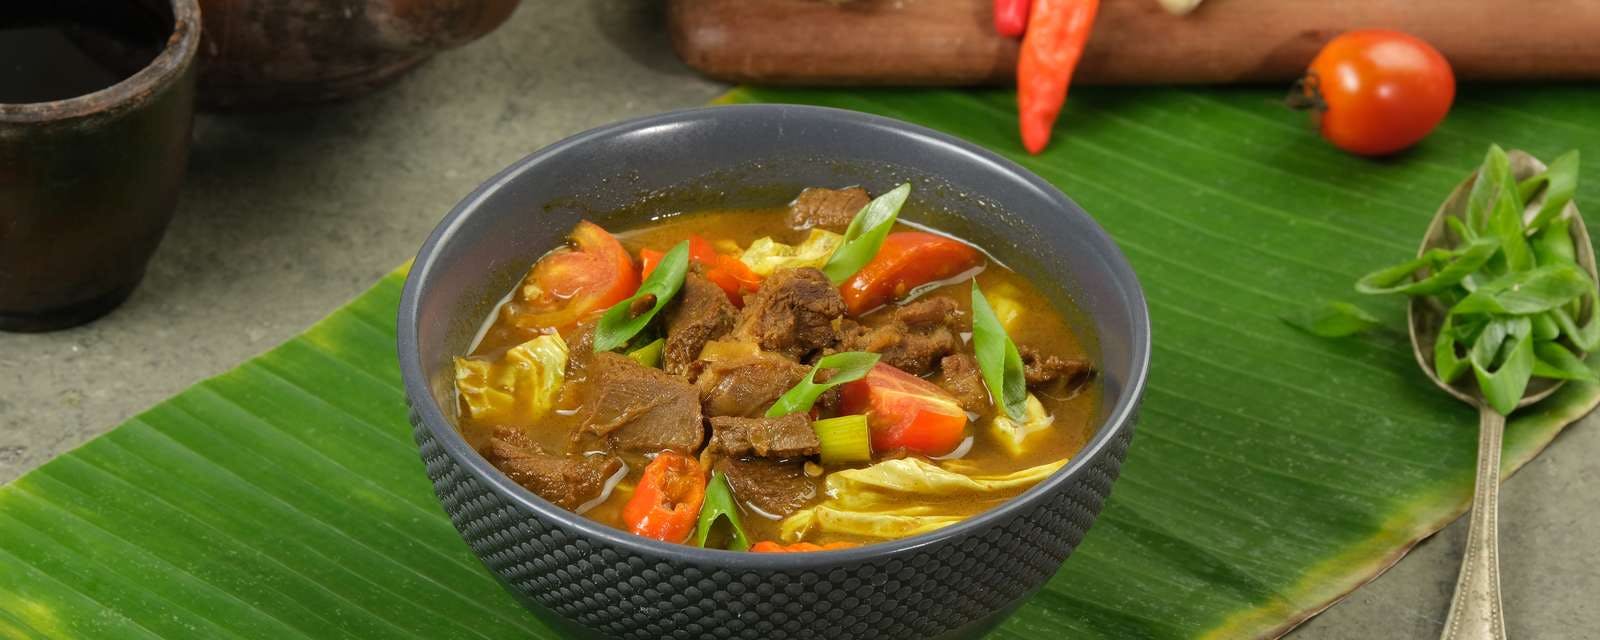 Tongseng Kambing, indonesisches Gericht